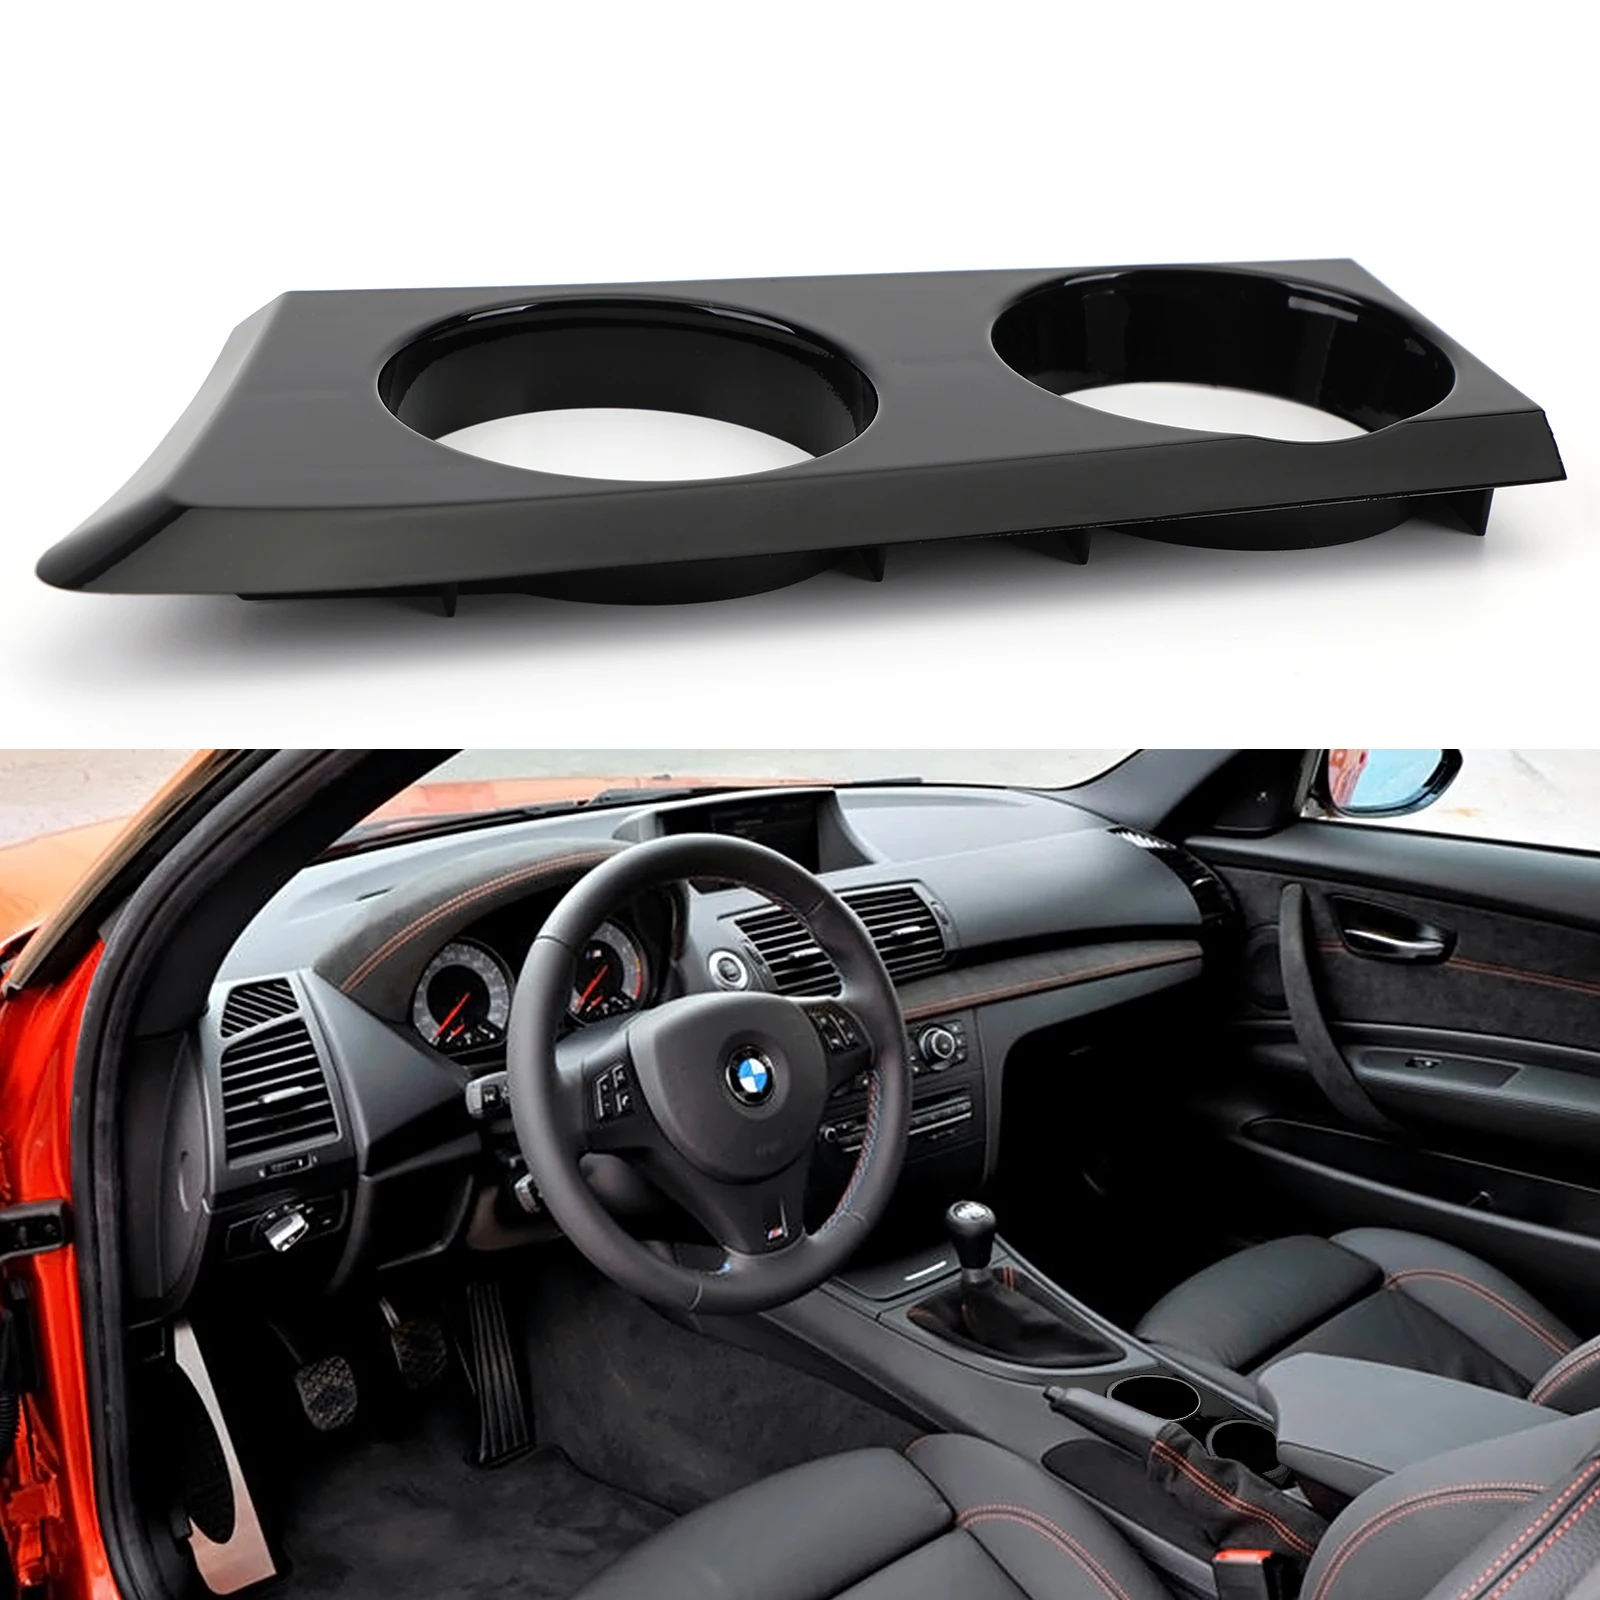  Porte-gobelet de voiture noir pour BMW Série 1 compatible avec  116 116i 118 118i 118d 120d 120i E87 E81 E82 E88